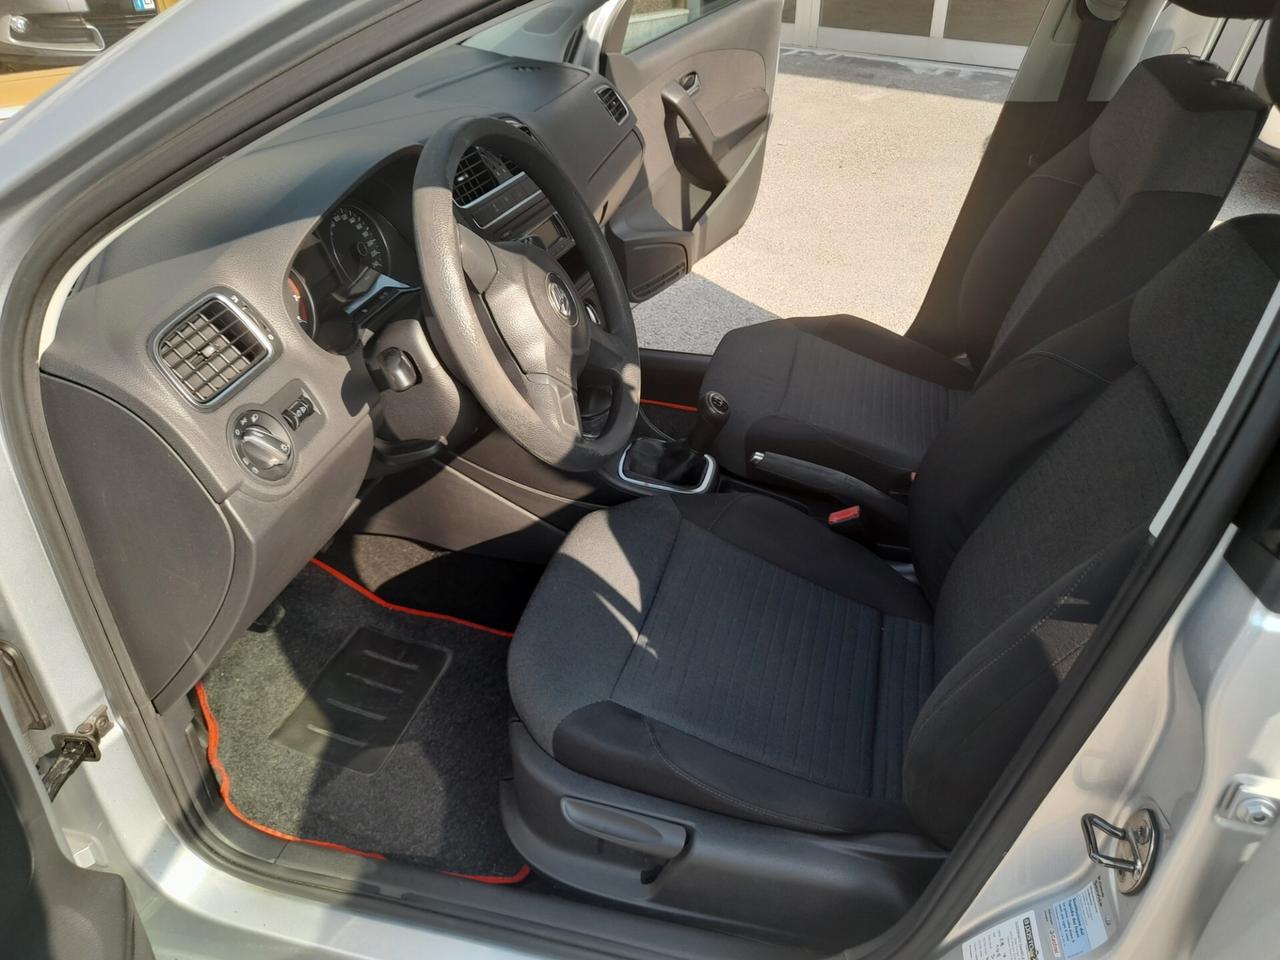 Volkswagen Polo 1.4 5 porte Comfortline